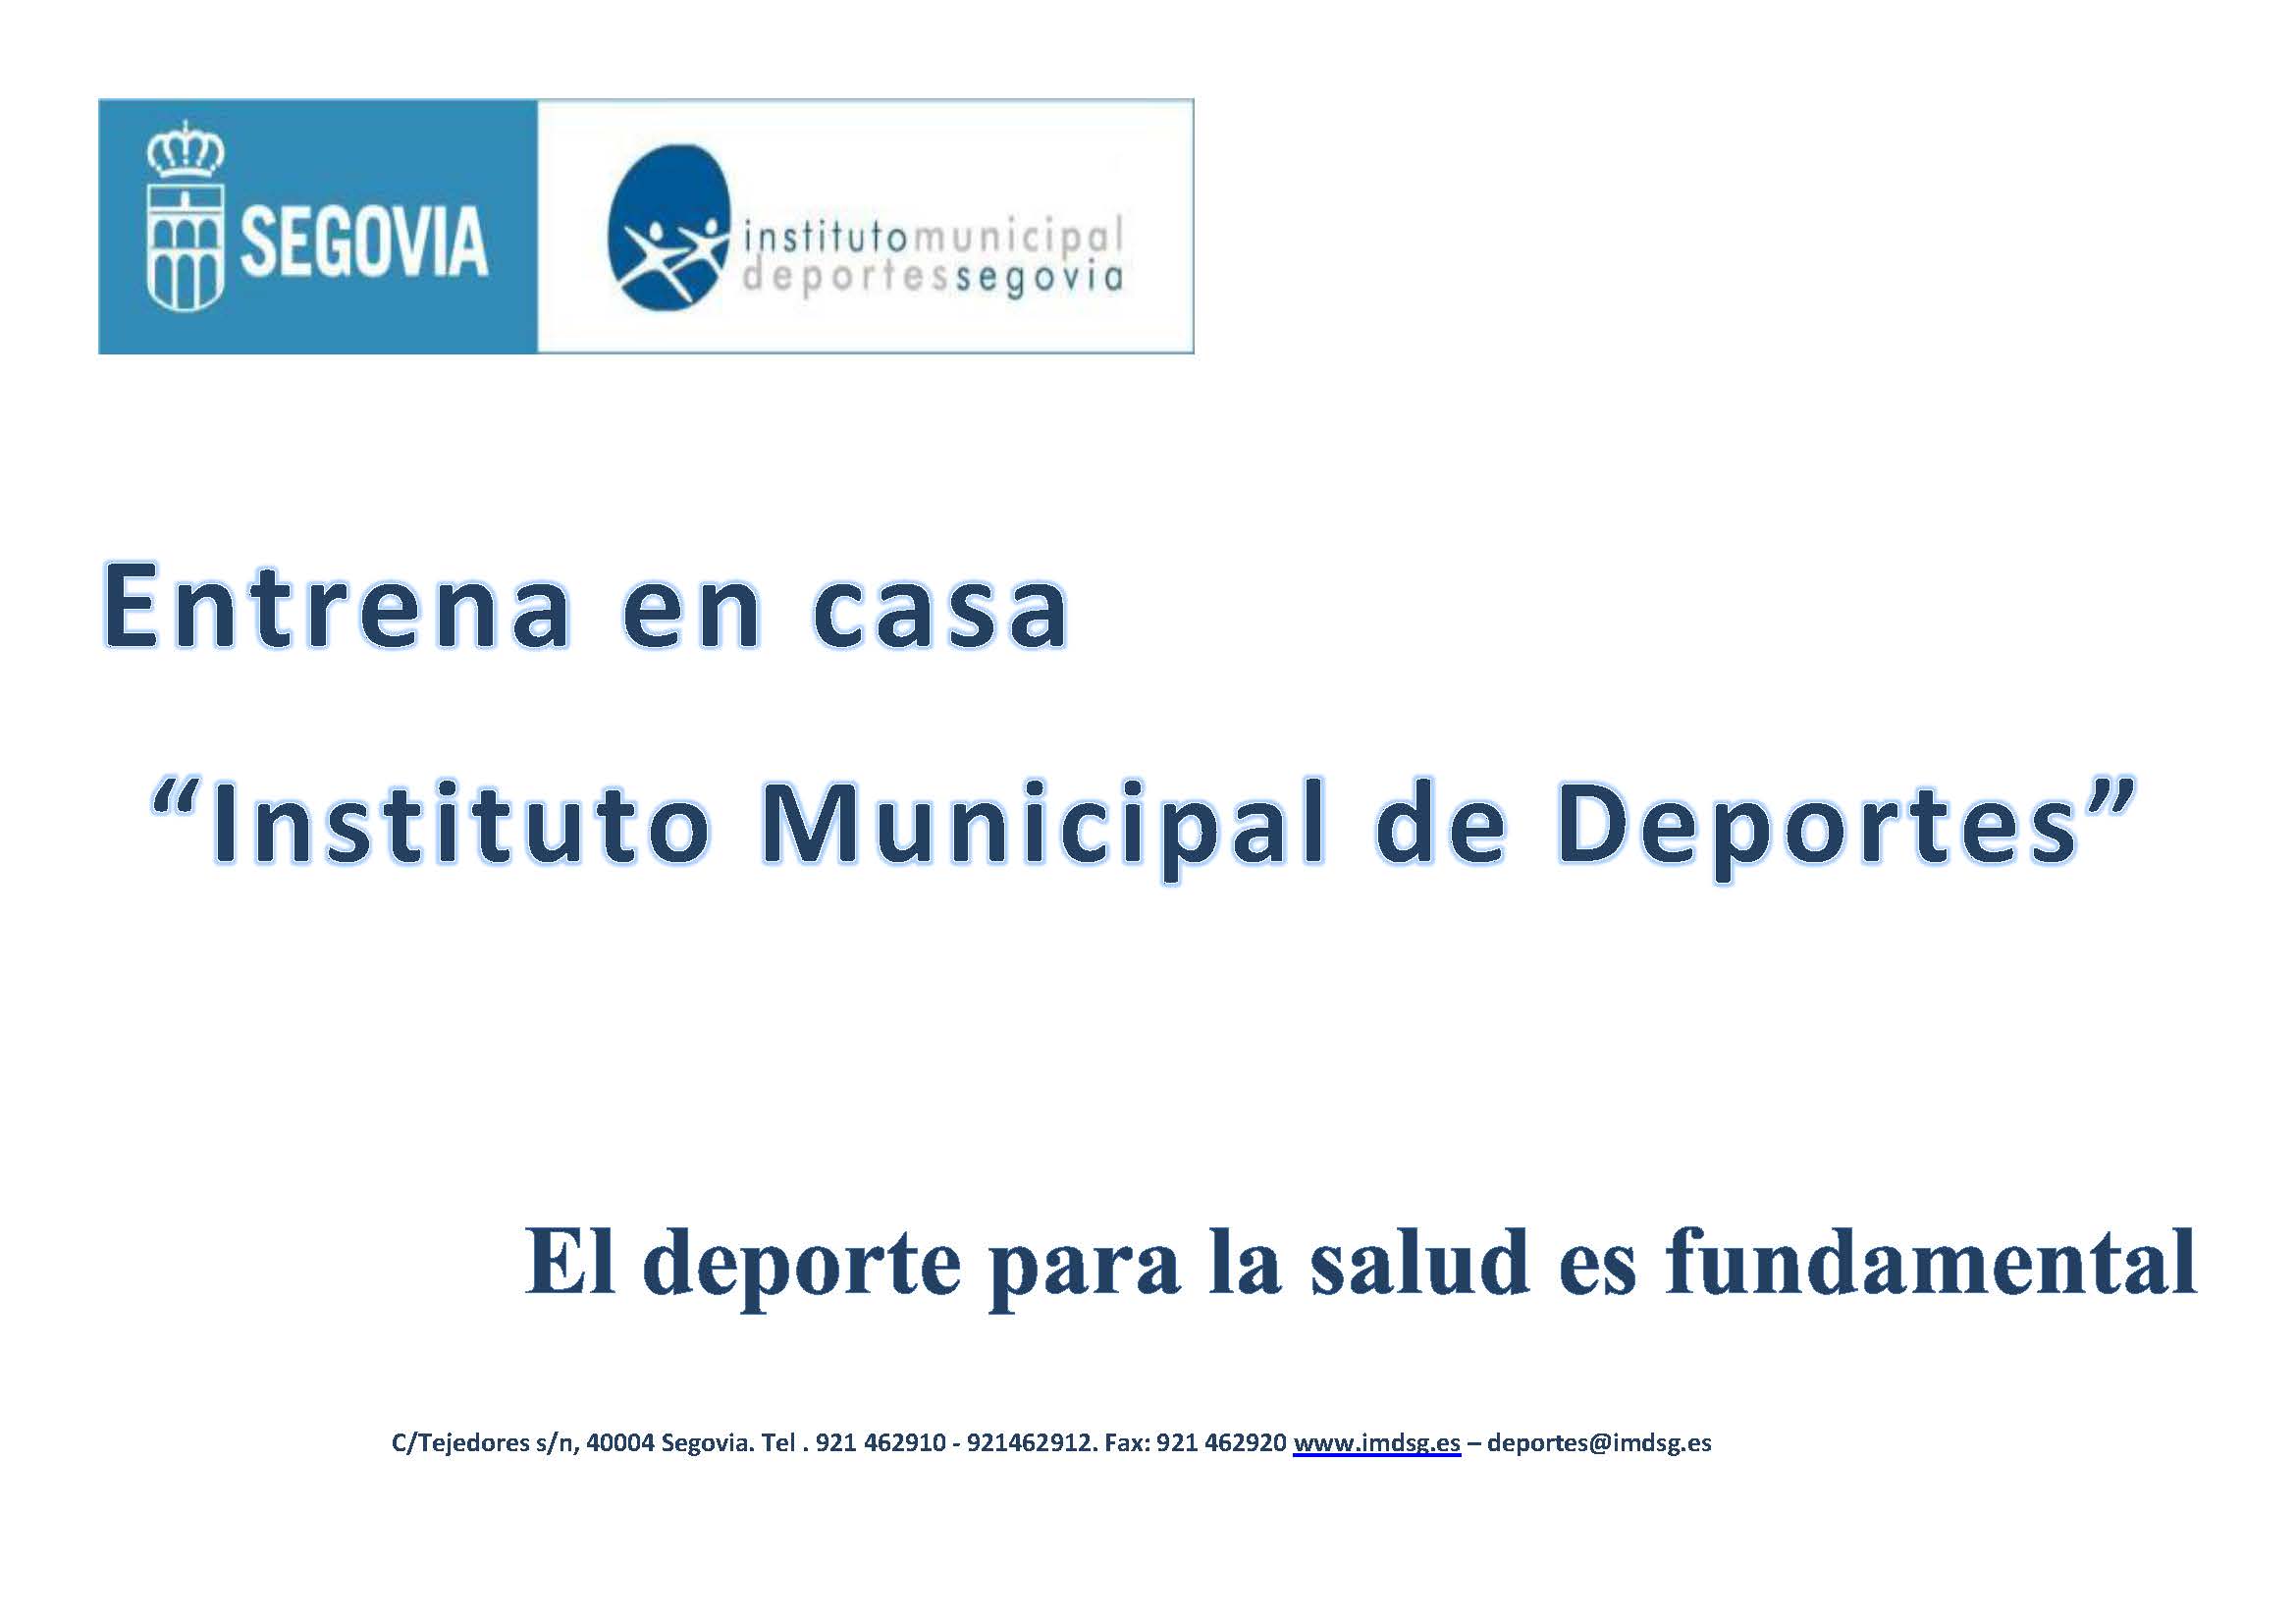 Entrena en casa con el Instituto Municipal de Deportes de Segovia (3)